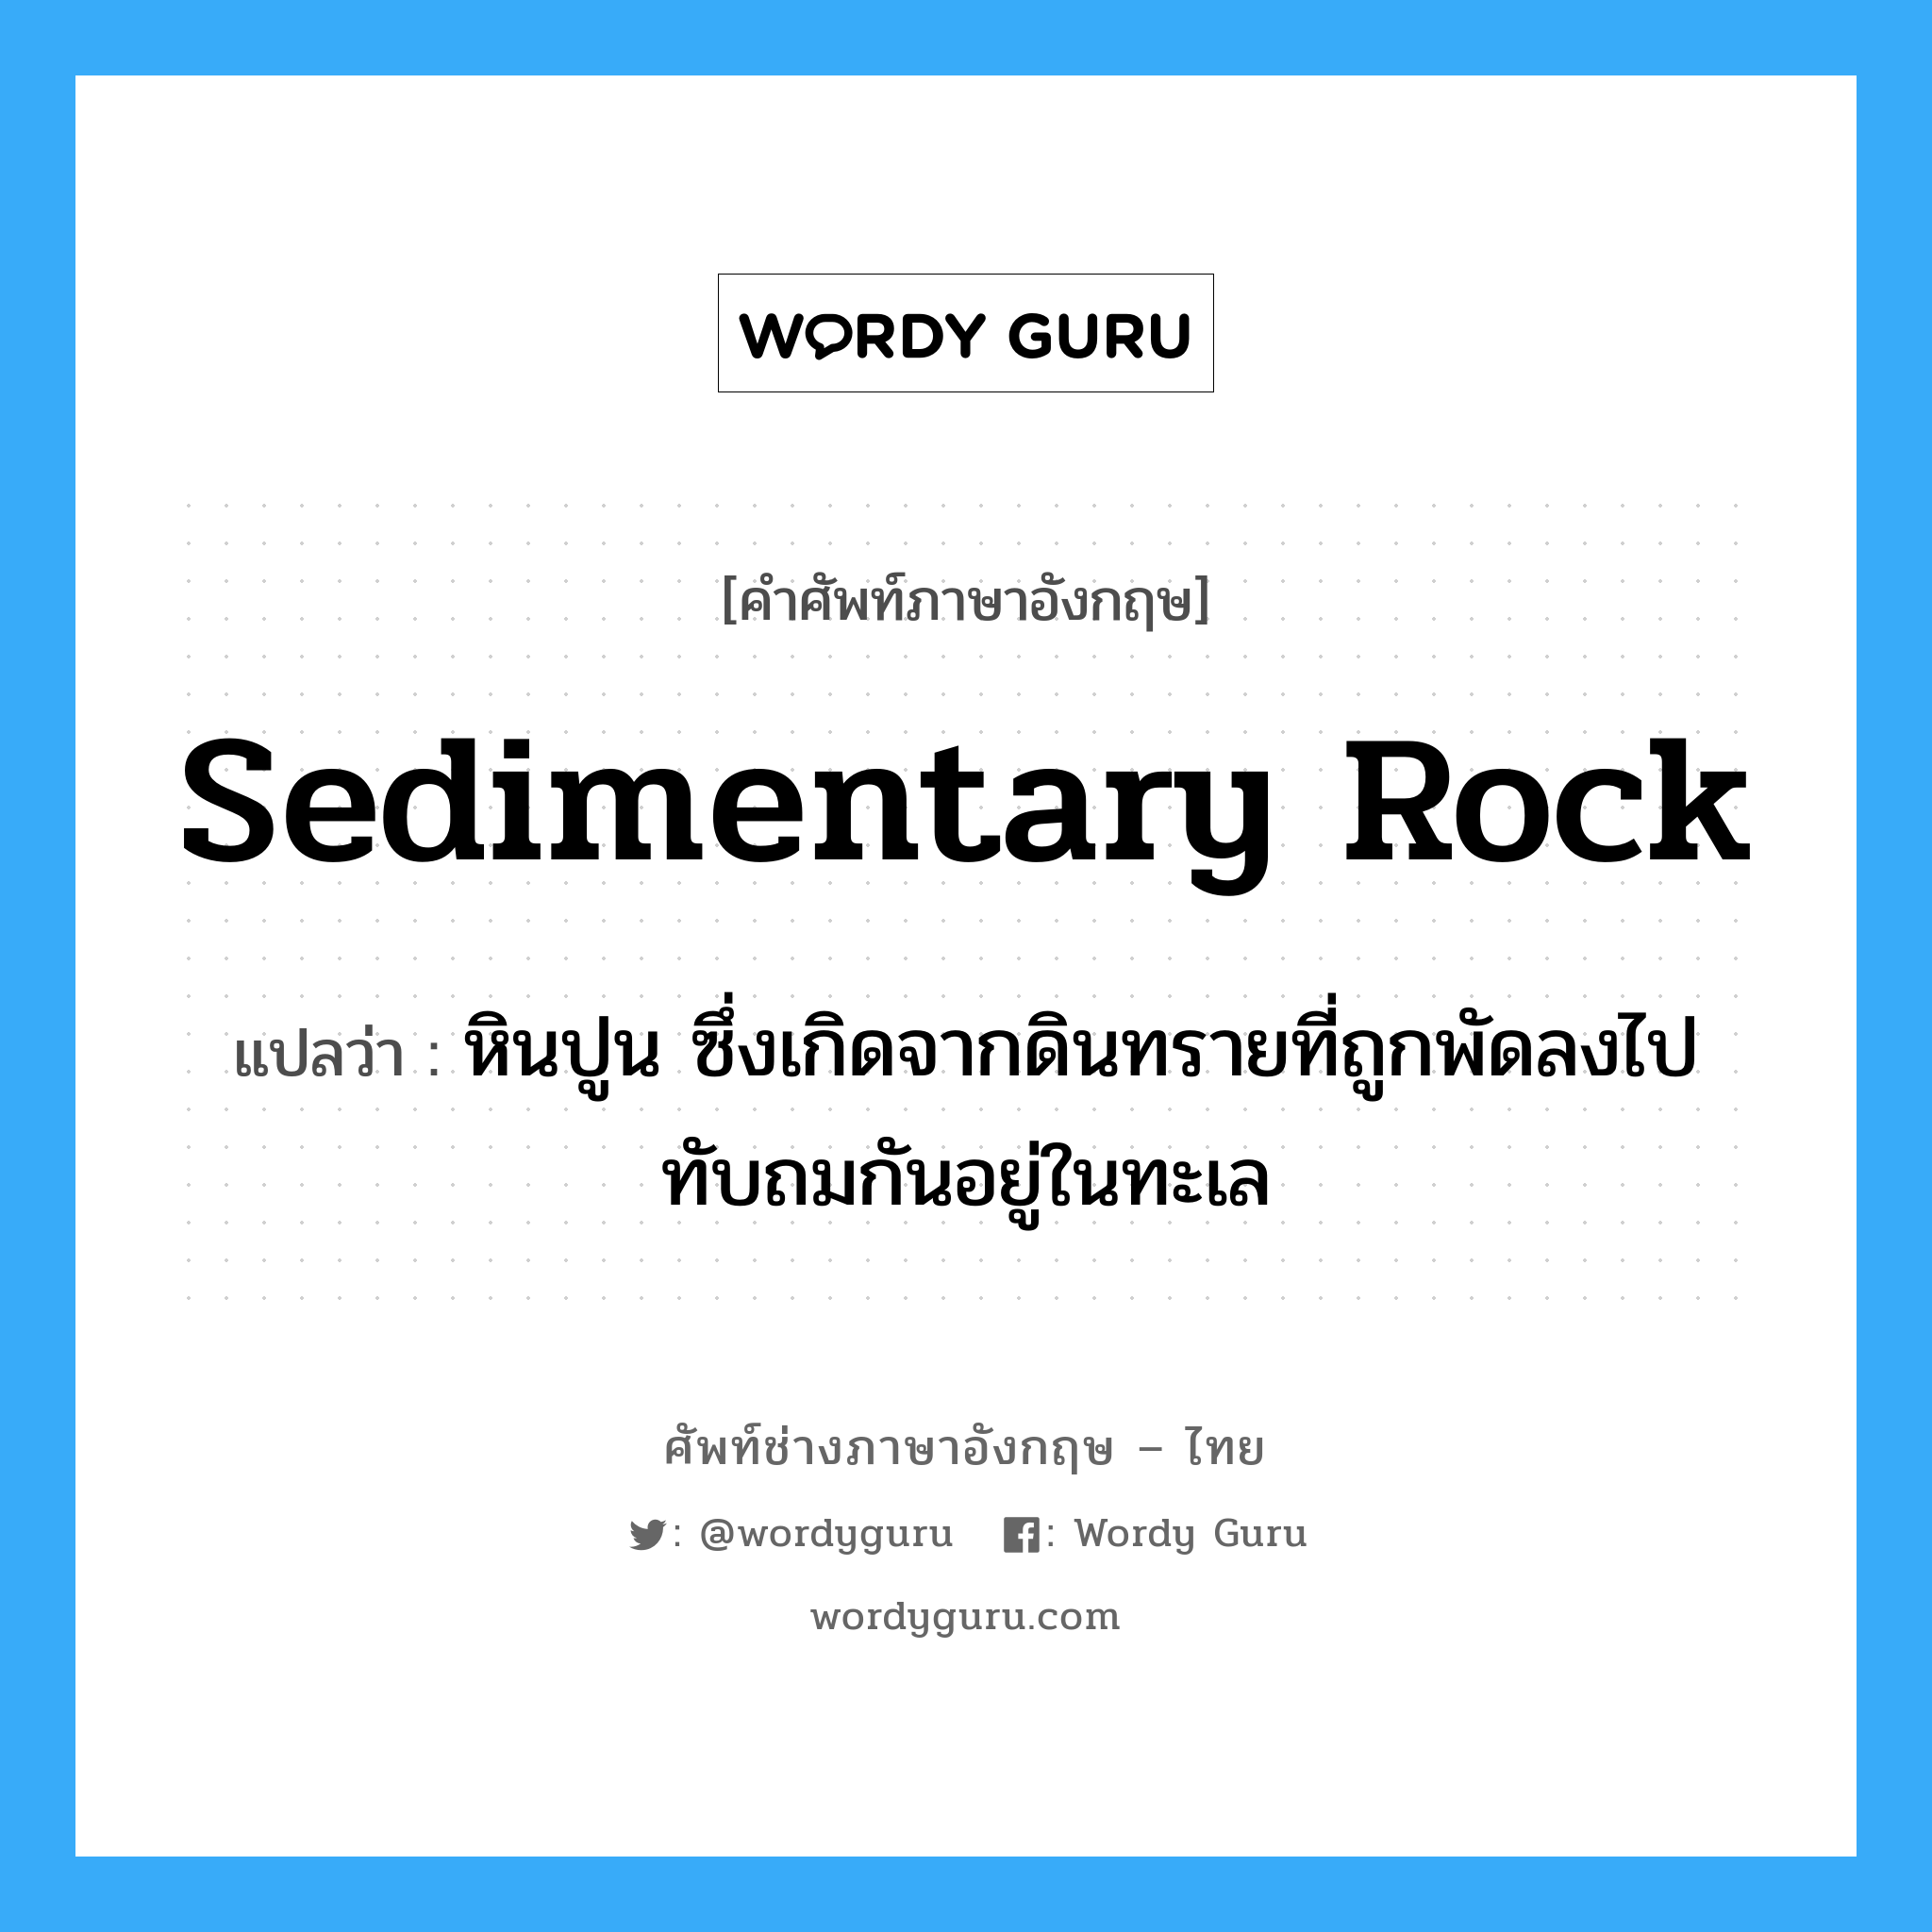 sedimentary rock แปลว่า?, คำศัพท์ช่างภาษาอังกฤษ - ไทย sedimentary rock คำศัพท์ภาษาอังกฤษ sedimentary rock แปลว่า หินปูน ซึ่งเกิดจากดินทรายที่ถูกพัดลงไปทับถมกันอยู่ในทะเล